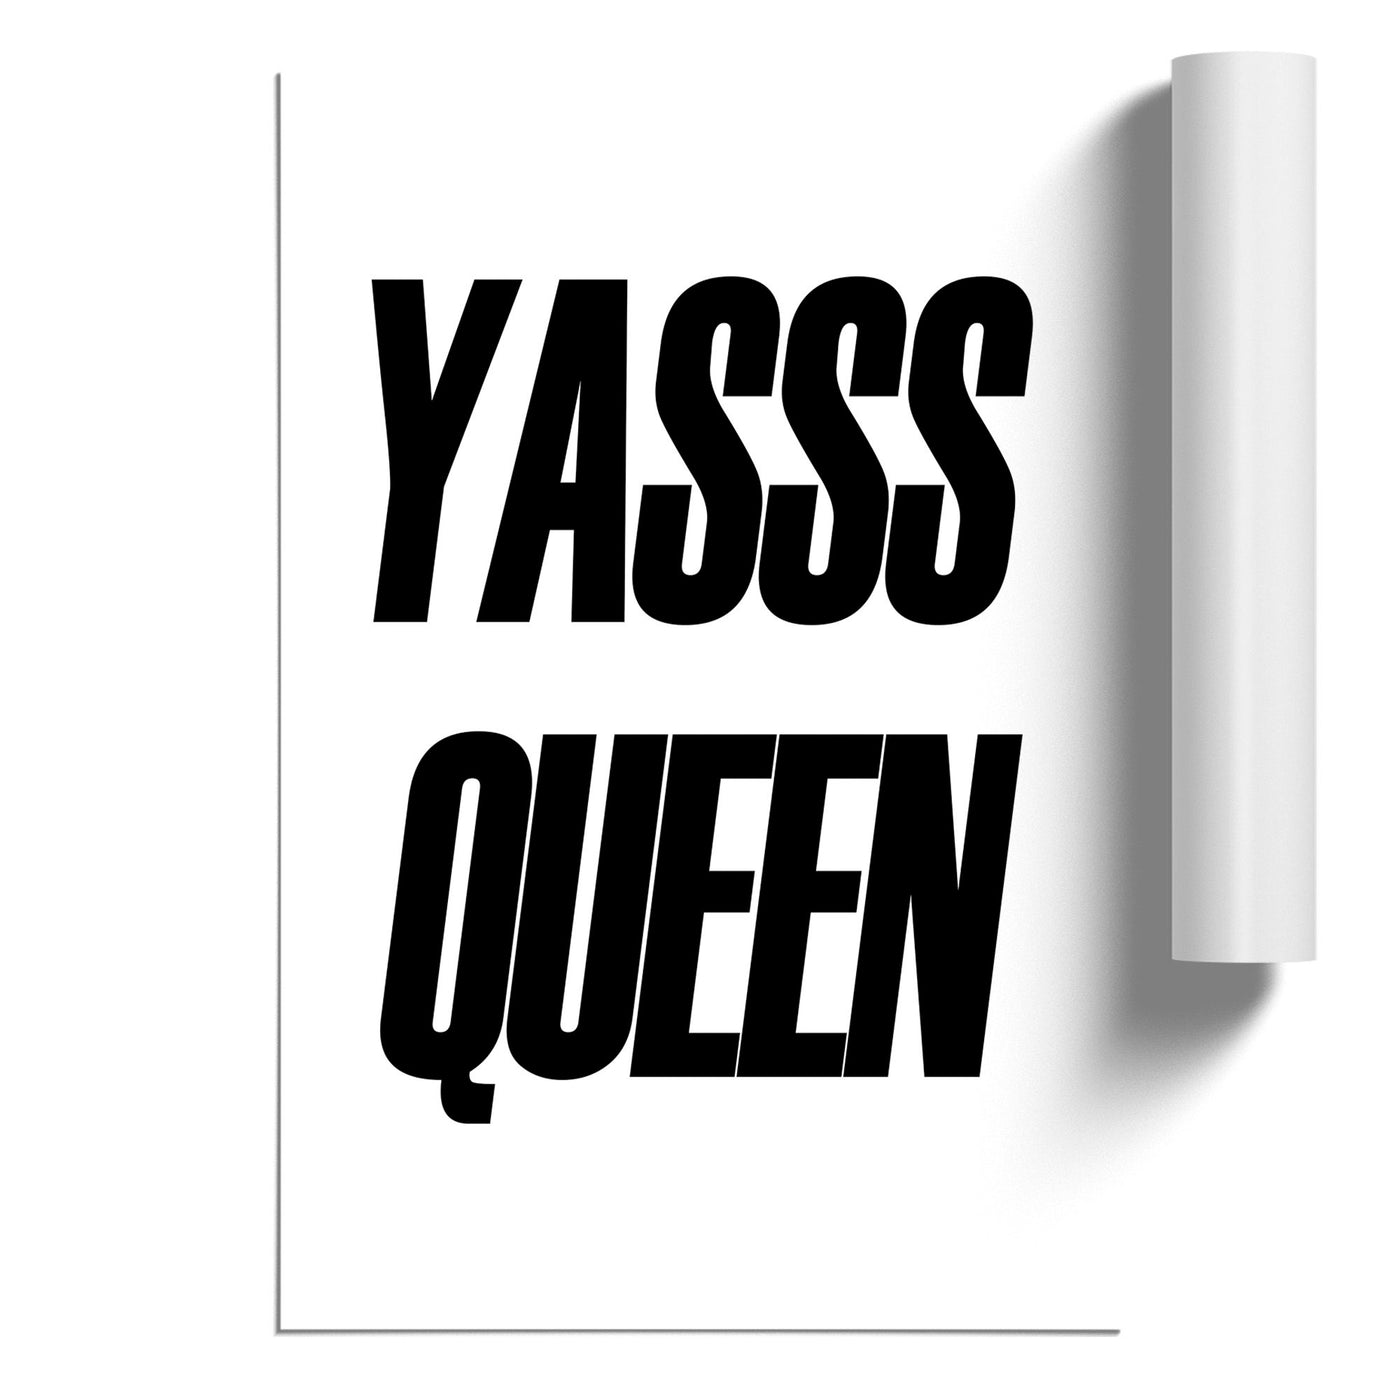 Yas Queen